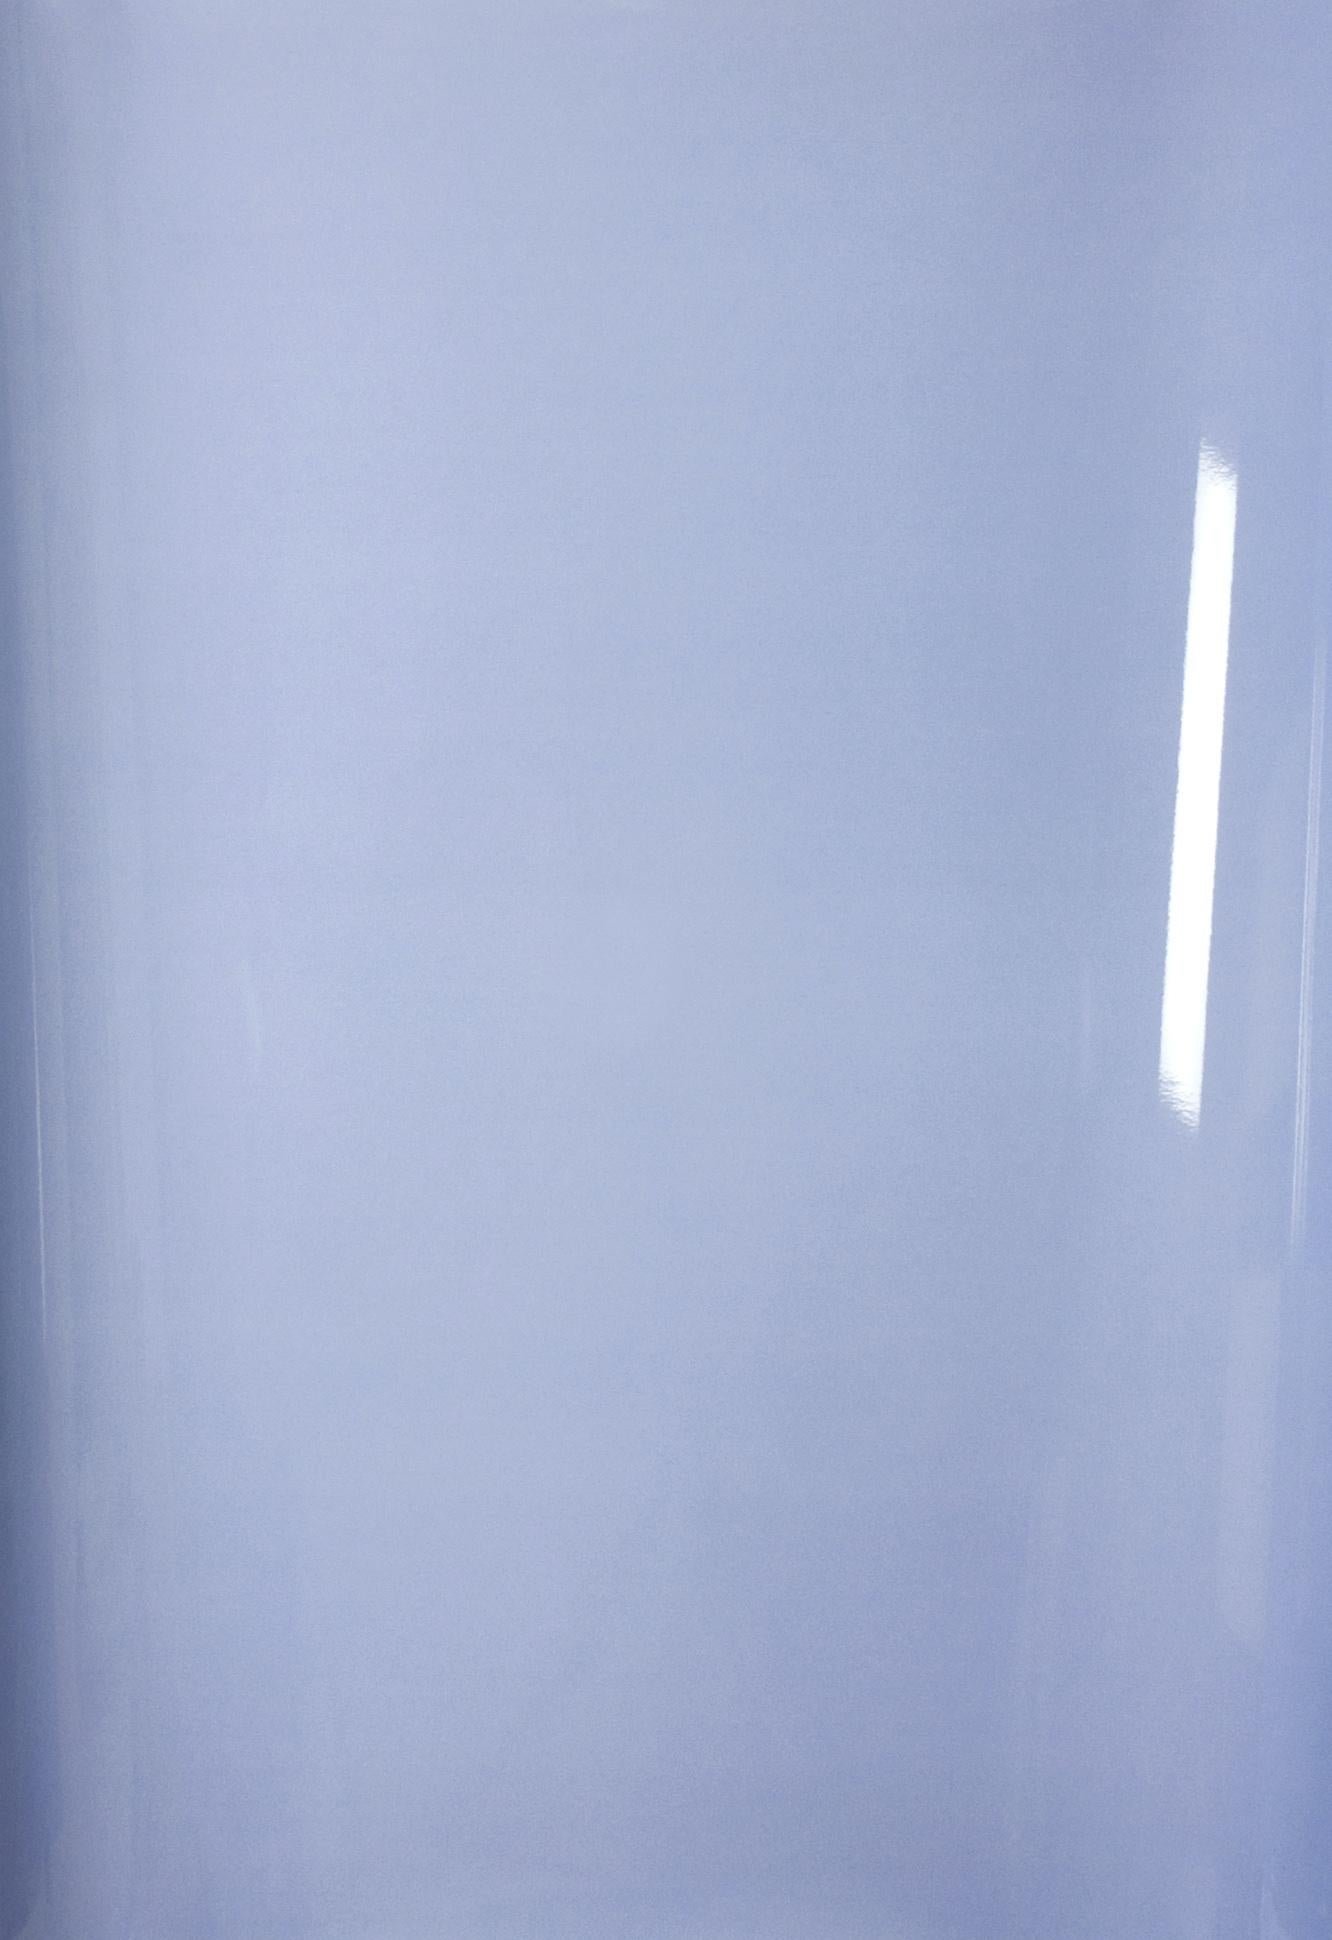 Color Photograph Ulrike Königshofer - Ombres sur papier, n° 2 - Photographie abstraite contemporaine en camaïeu de bleus